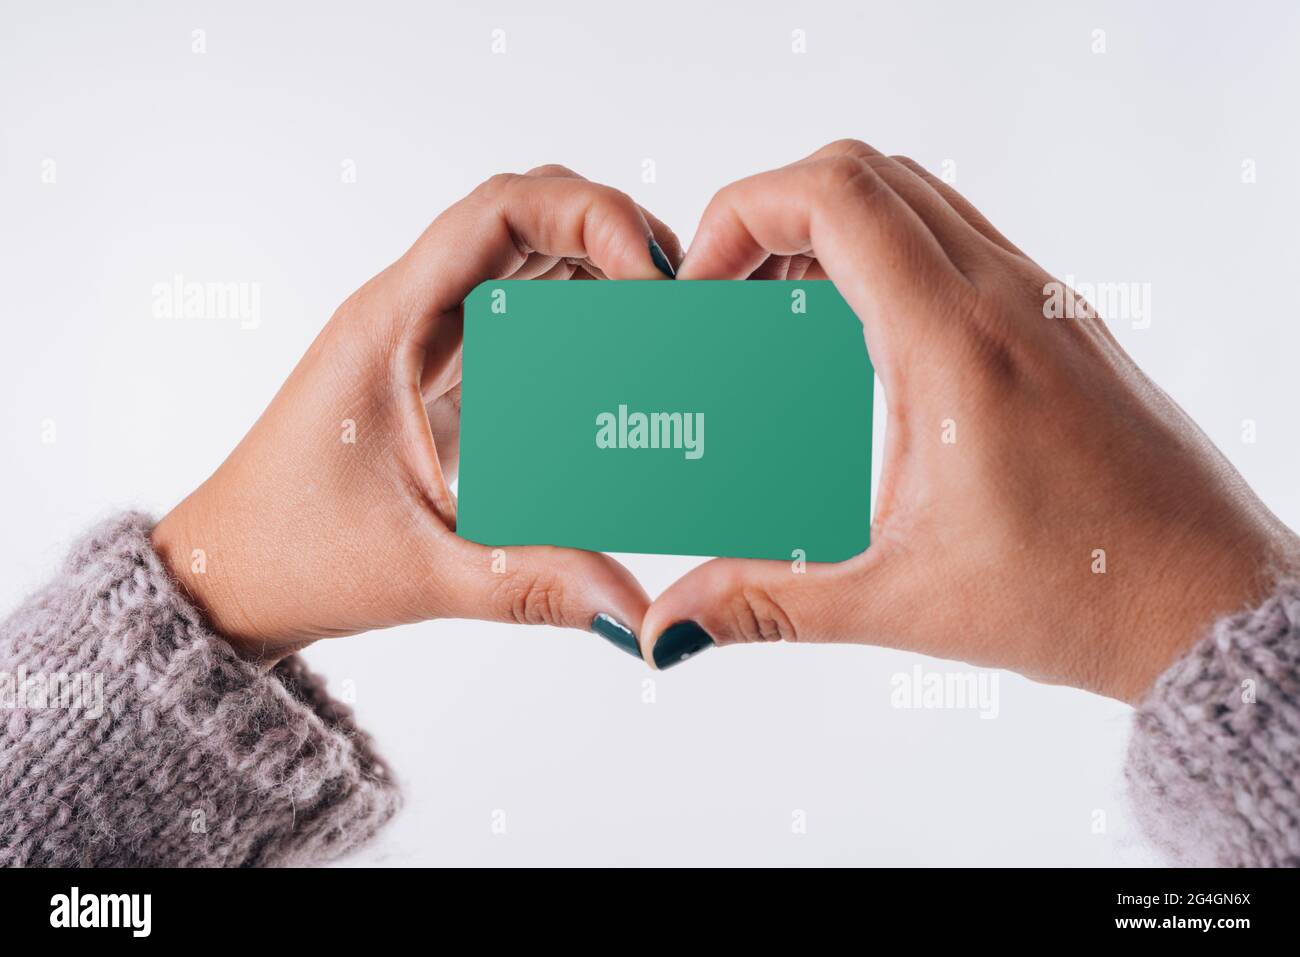 Un coeur formé avec les mains d'une femme qui a une carte d'achat. Concept commercial Banque D'Images